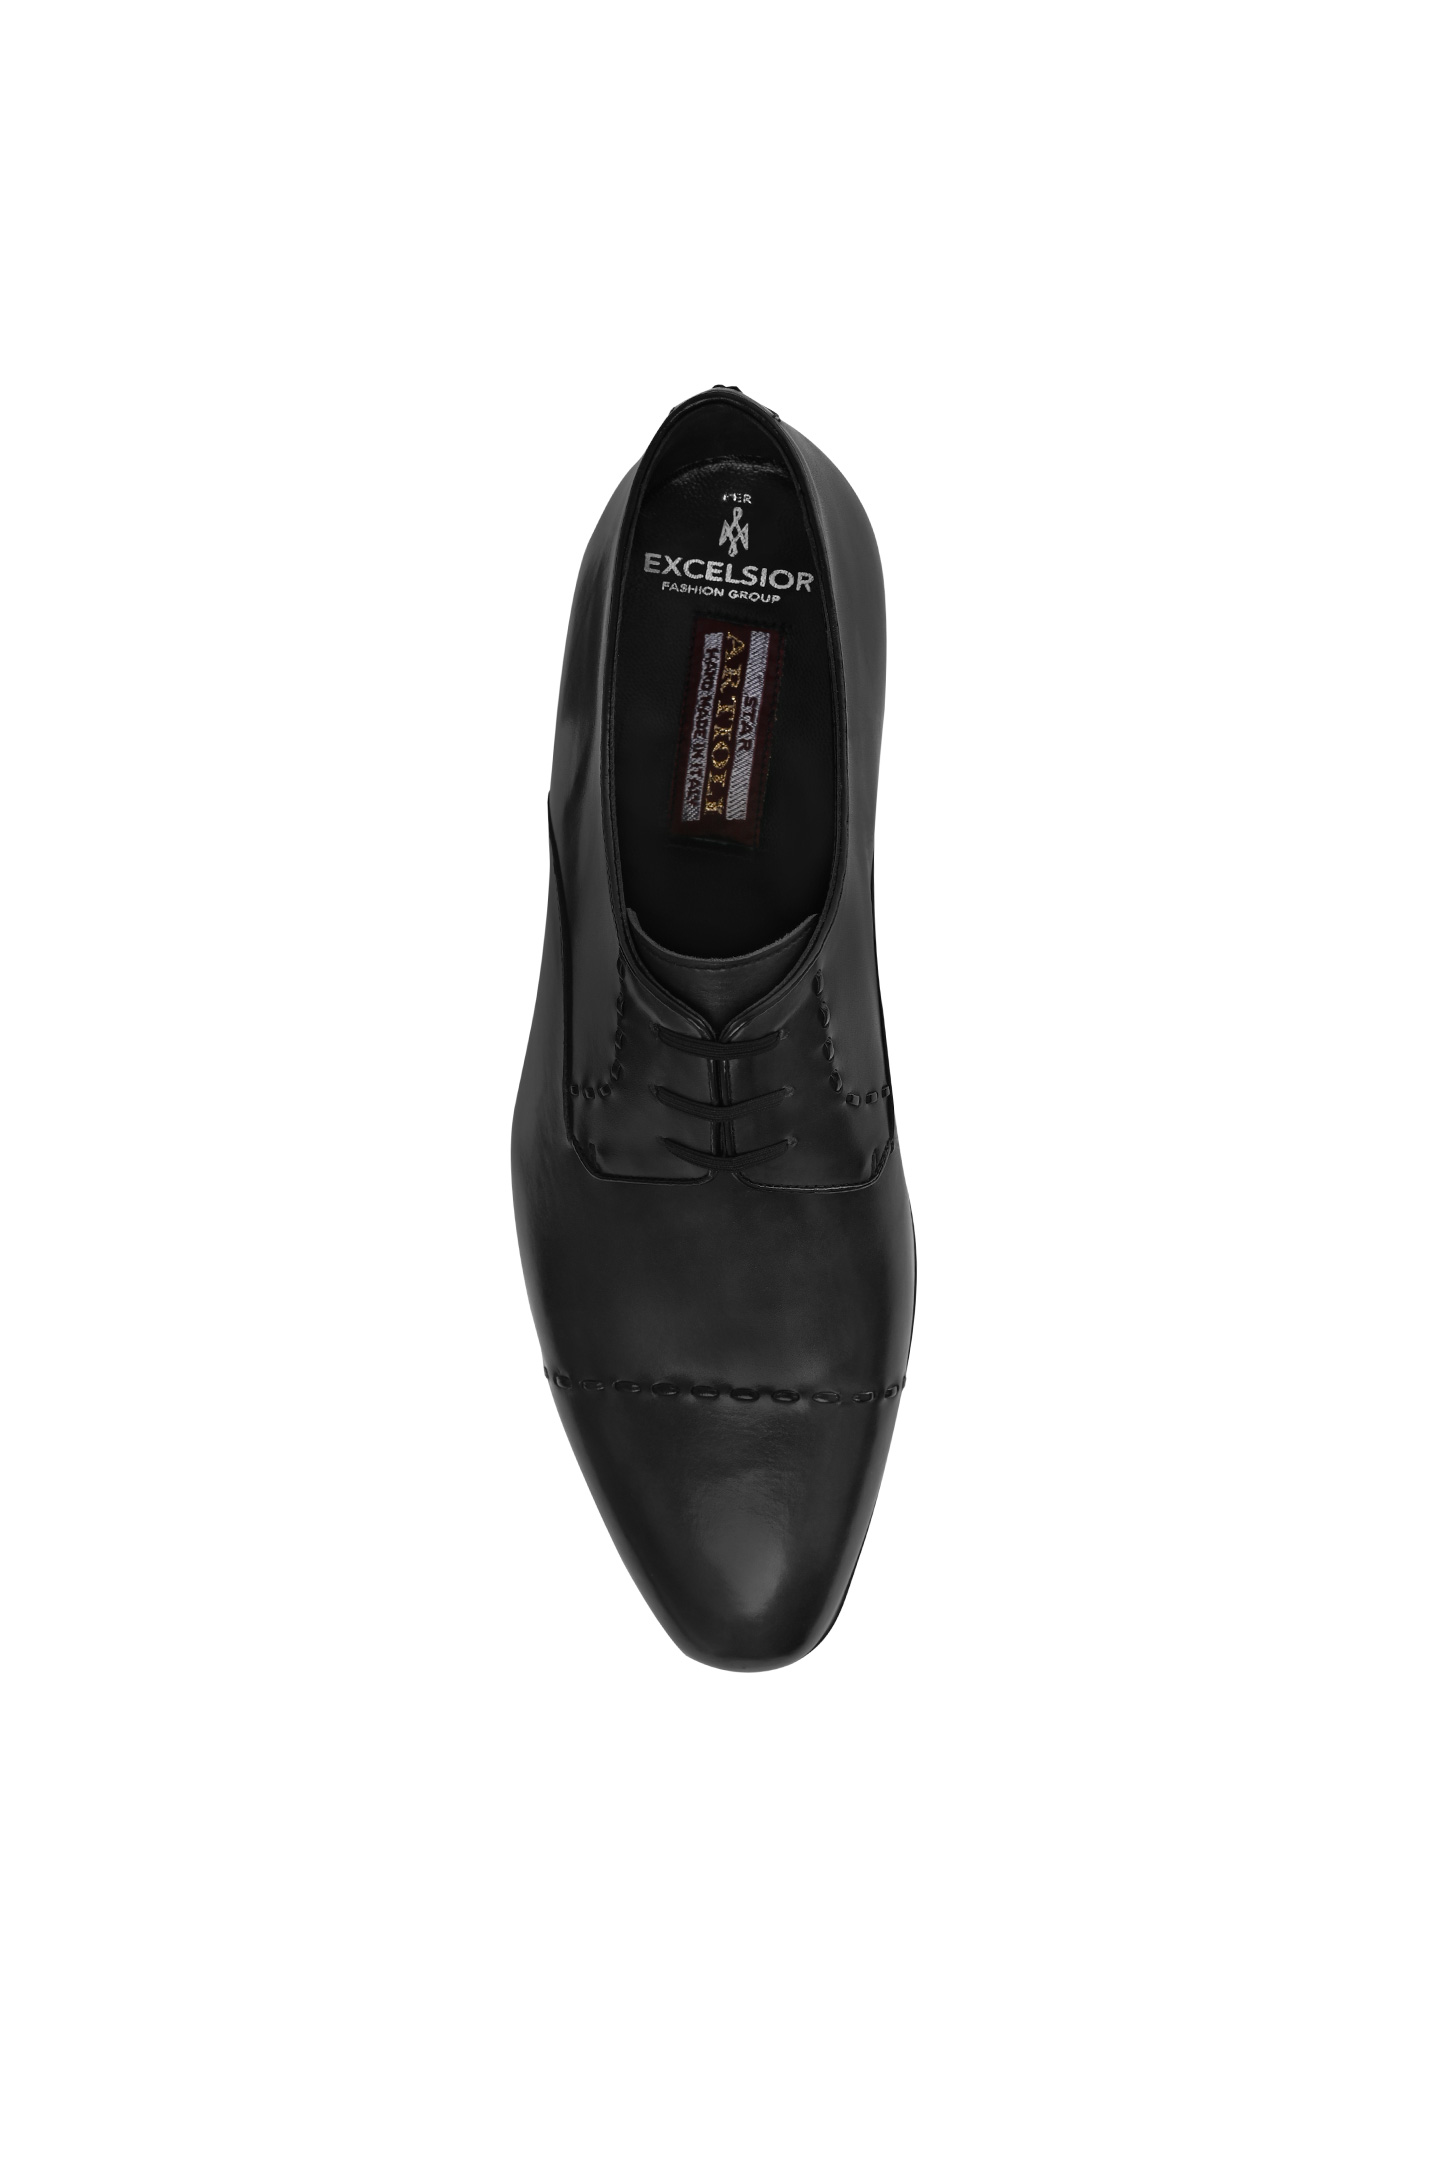 Туфли ARTIOLI 06S081, цвет: Темно-серый, Мужской